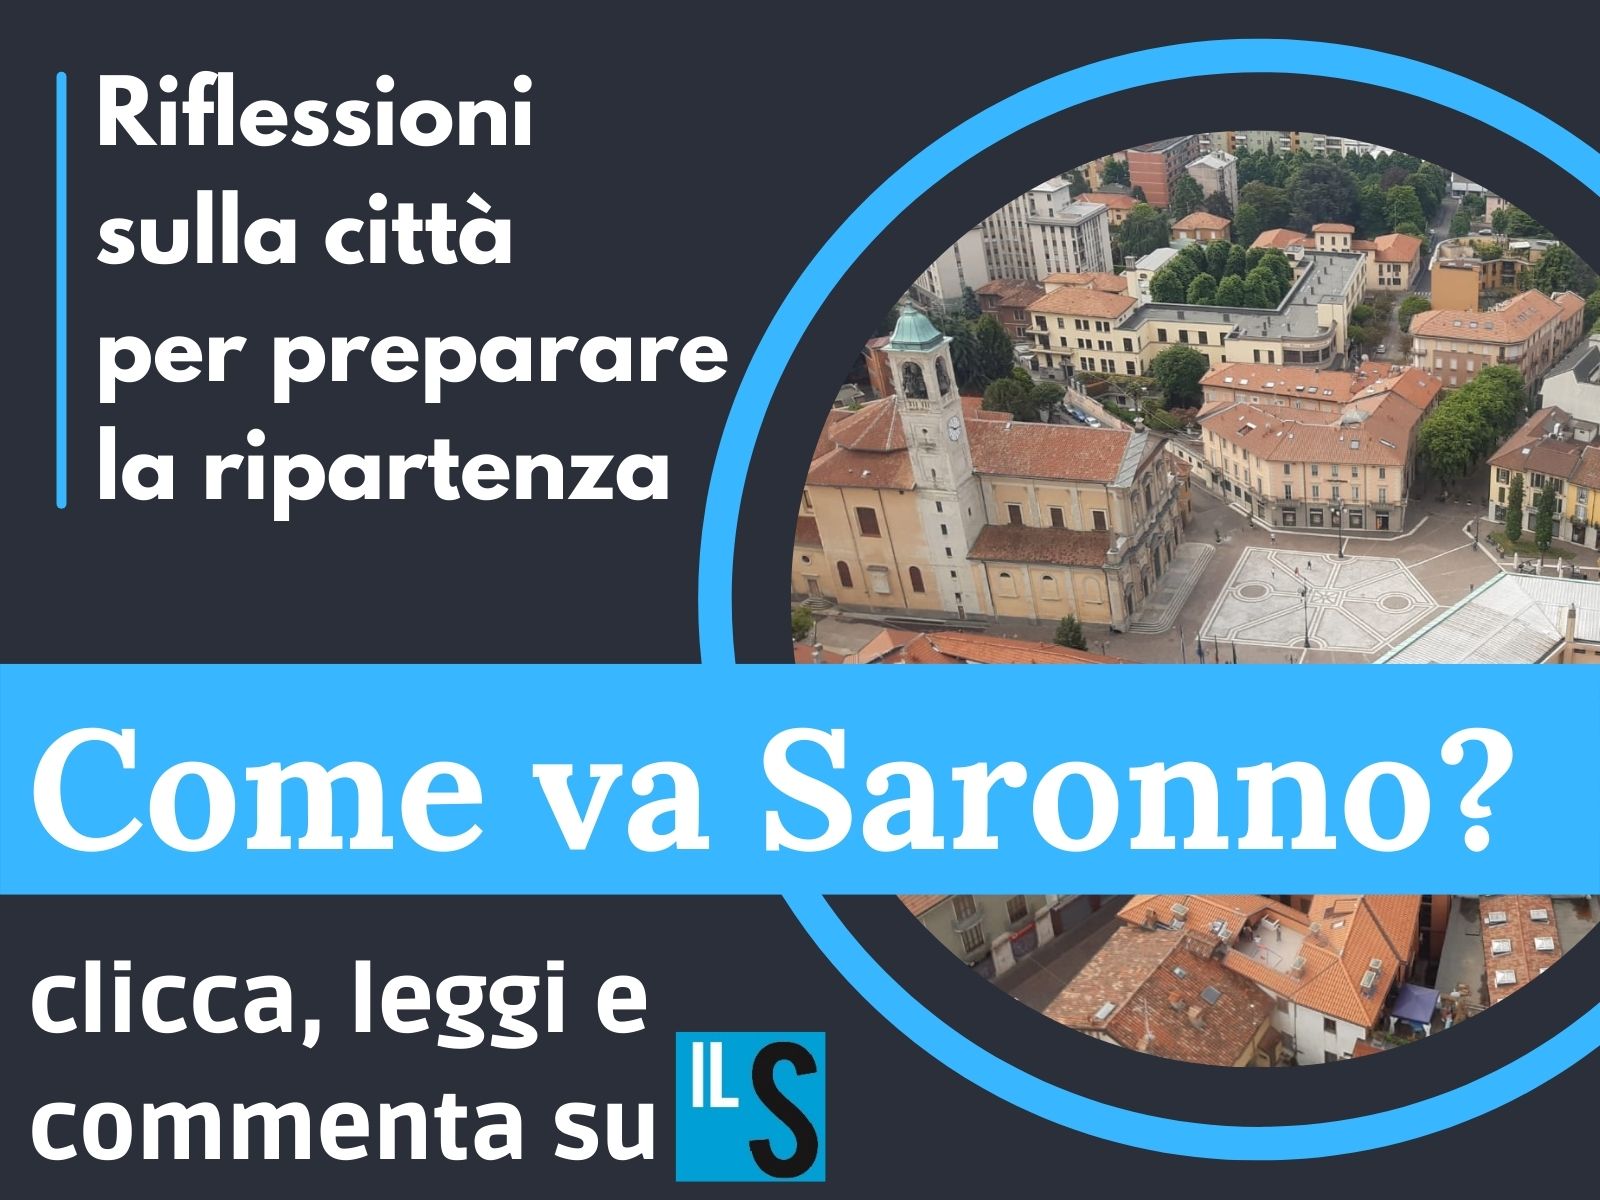 “Come va Saronno?” Cinque domande alla città per fare il punto in vista della ripartenza